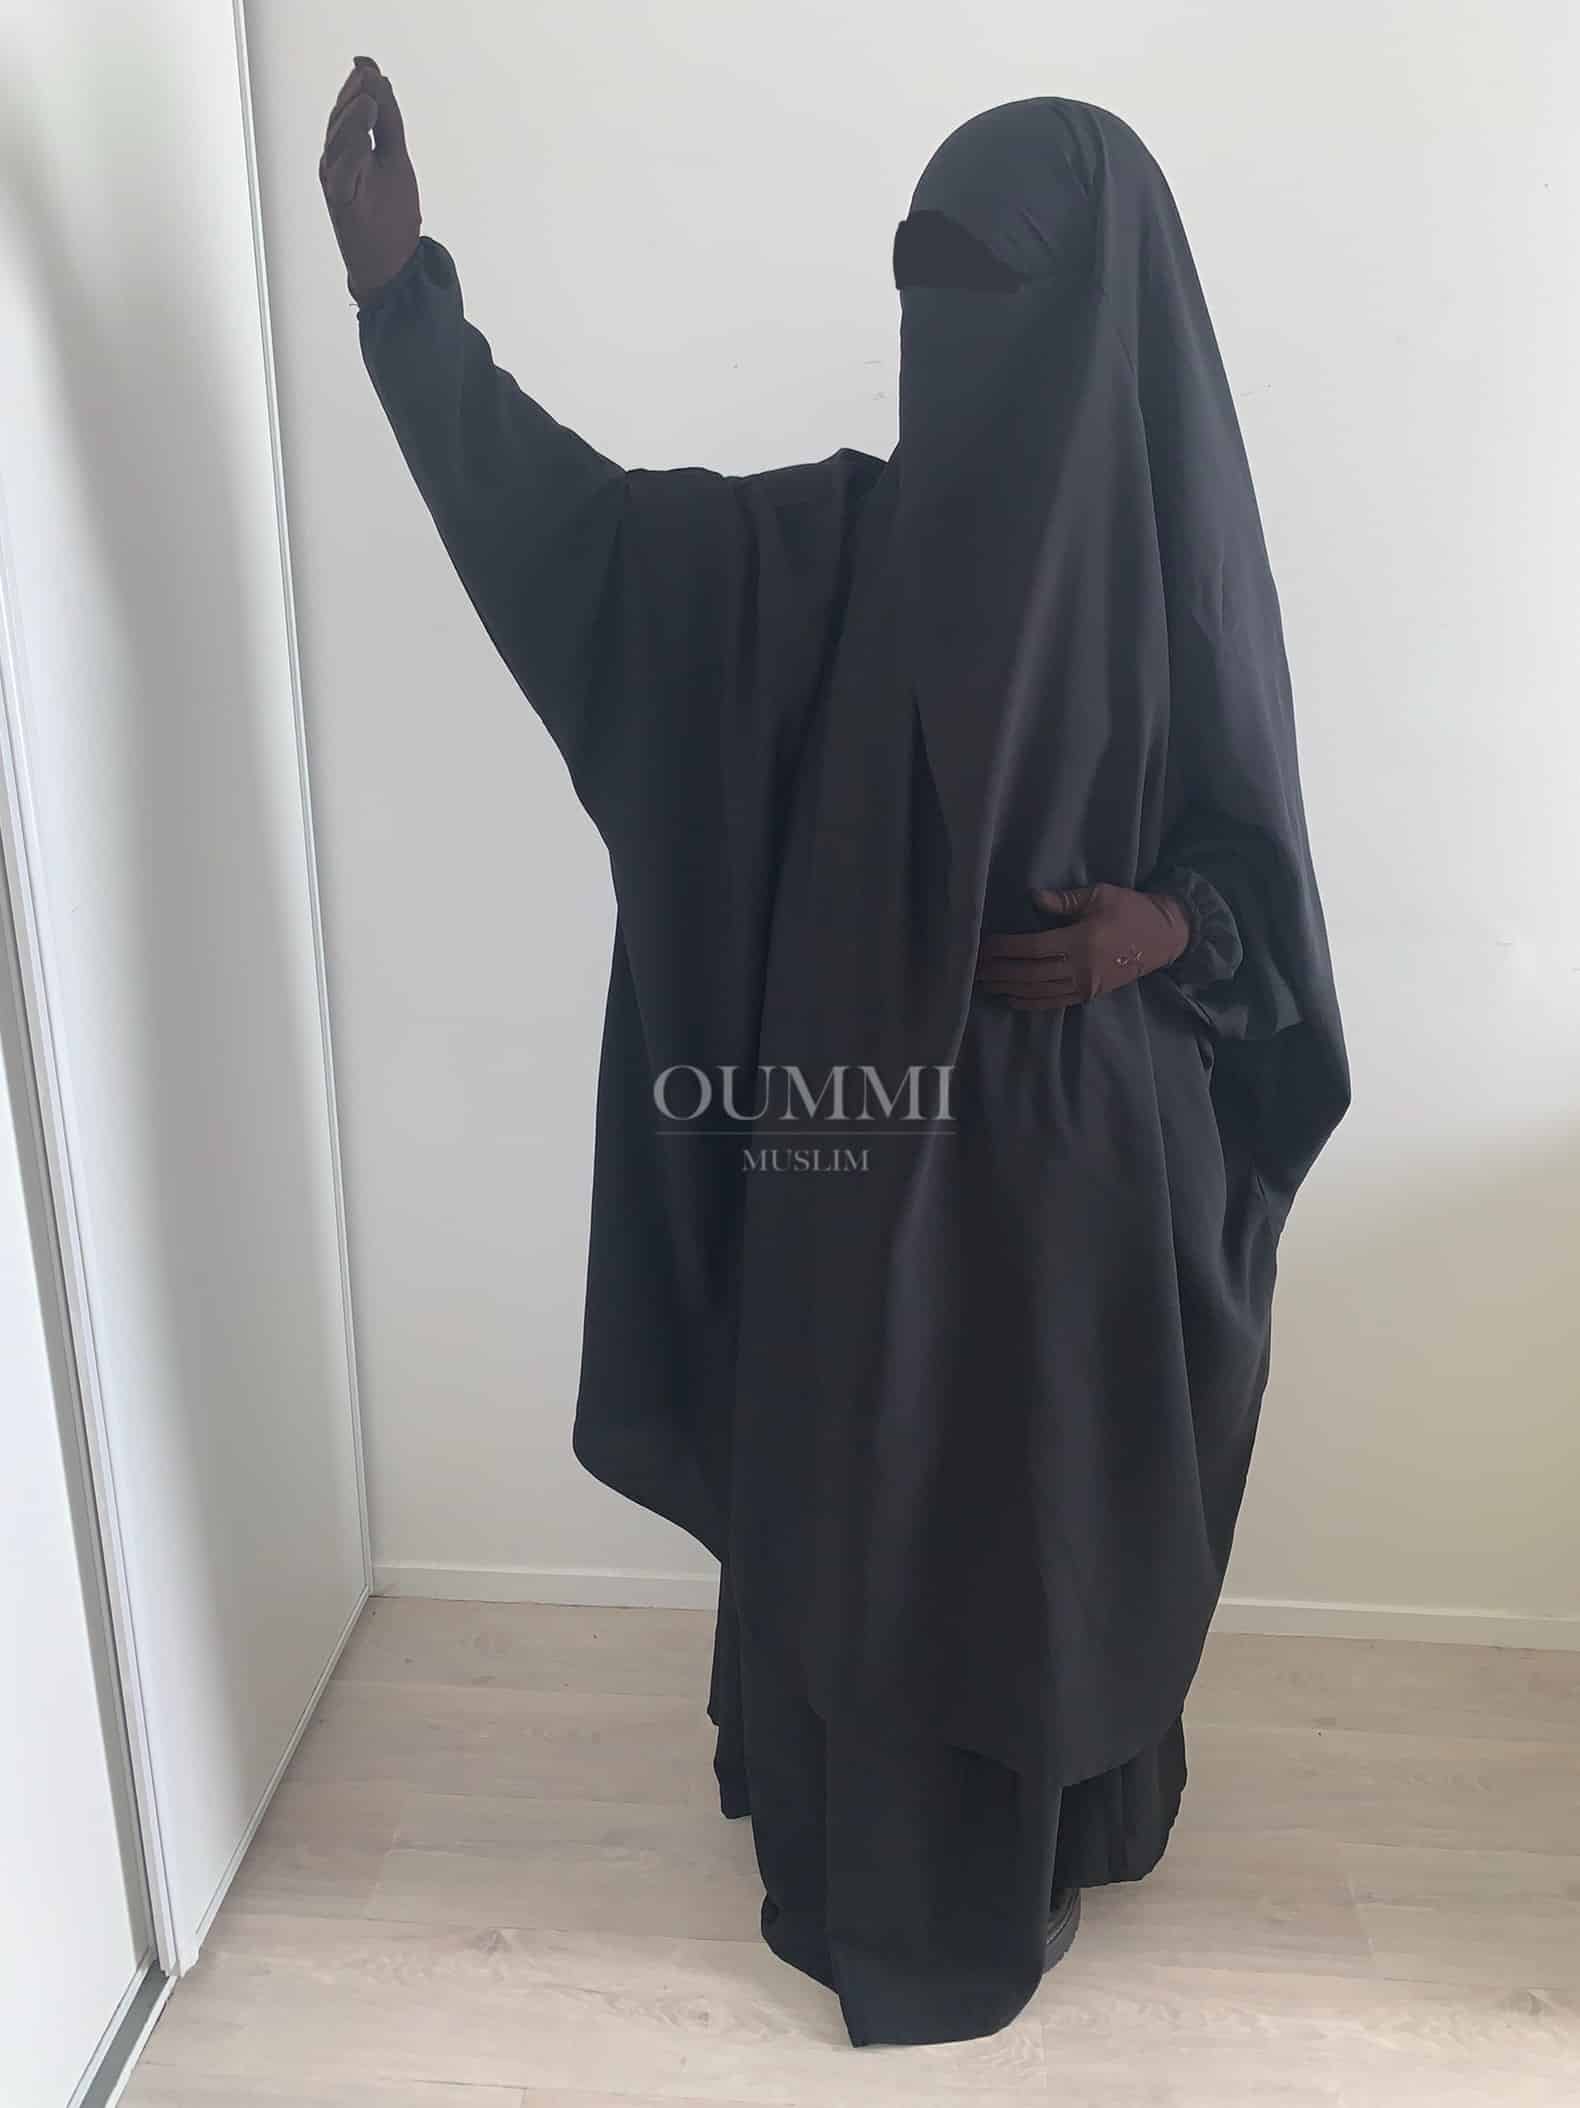 Jilbab 2 pièce pas cher pour femme musulmane conçu dans un magnifique tissu whool peach, c'est un jilbab à petit prix que nous vous proposons avec un large choix de coloris. Idéal pour une femme voilée portant le jilbab ou le niqab. Ce jilbab ce décline en modèle jupe ou sarouel, pour femme ou petite fille.